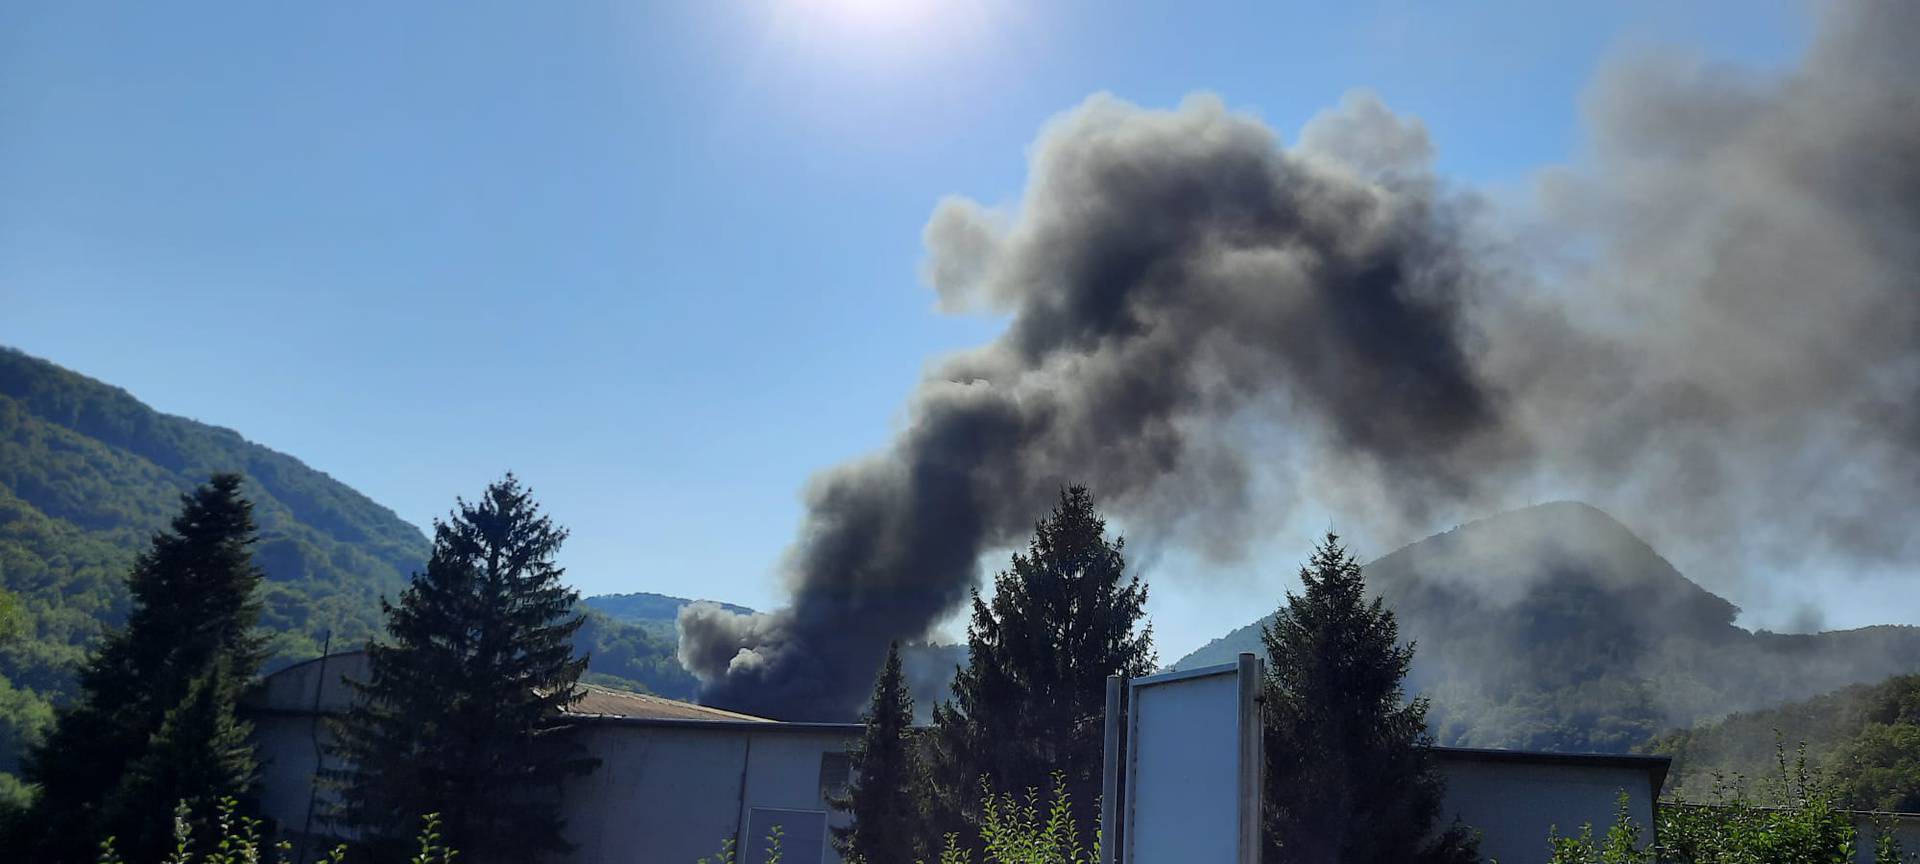 Crni dim uplašio je stanovnike Krapine: Vatrogasci na terenu